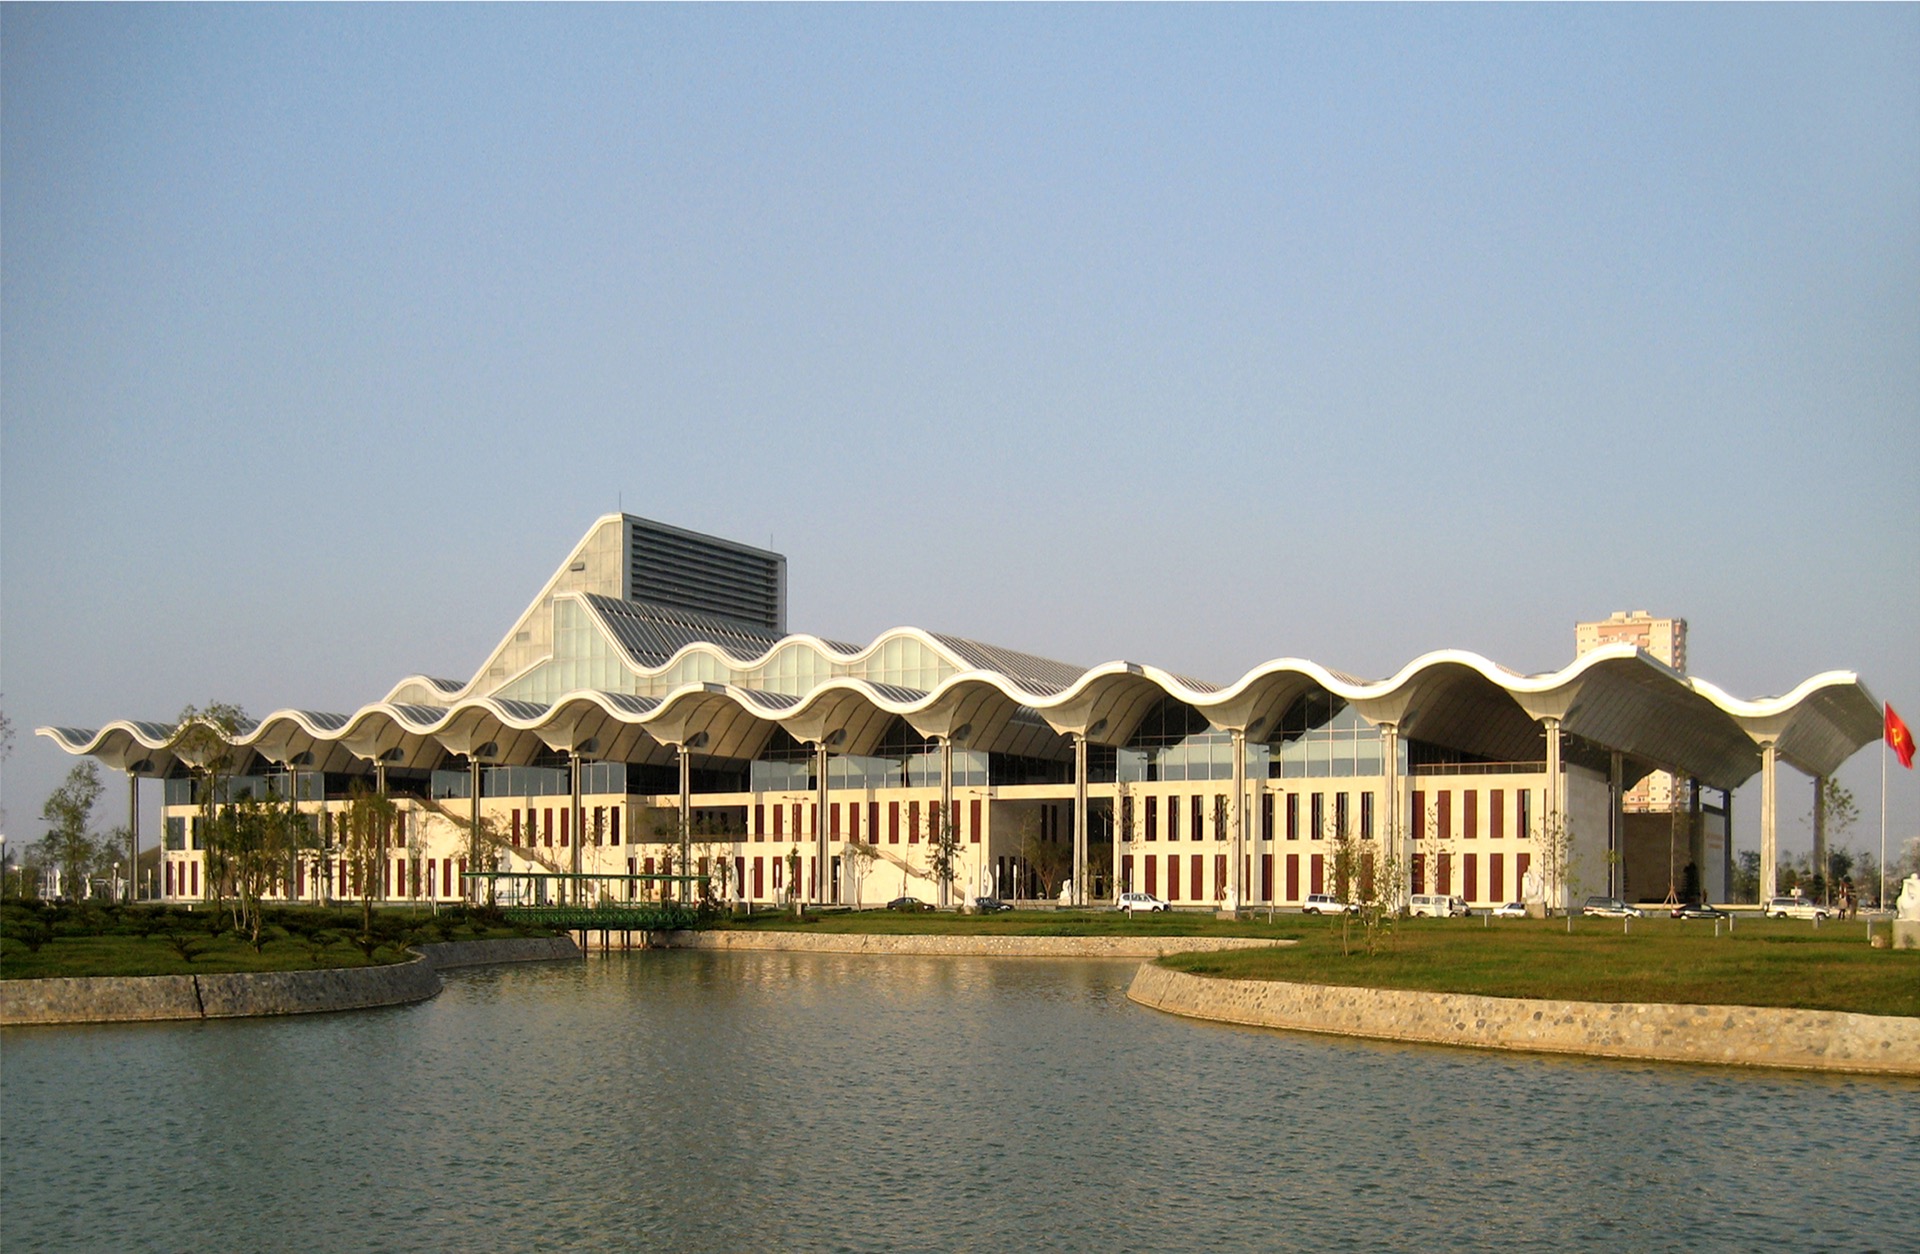 Trung tâm hội nghị Quốc gia tại Hà Nội